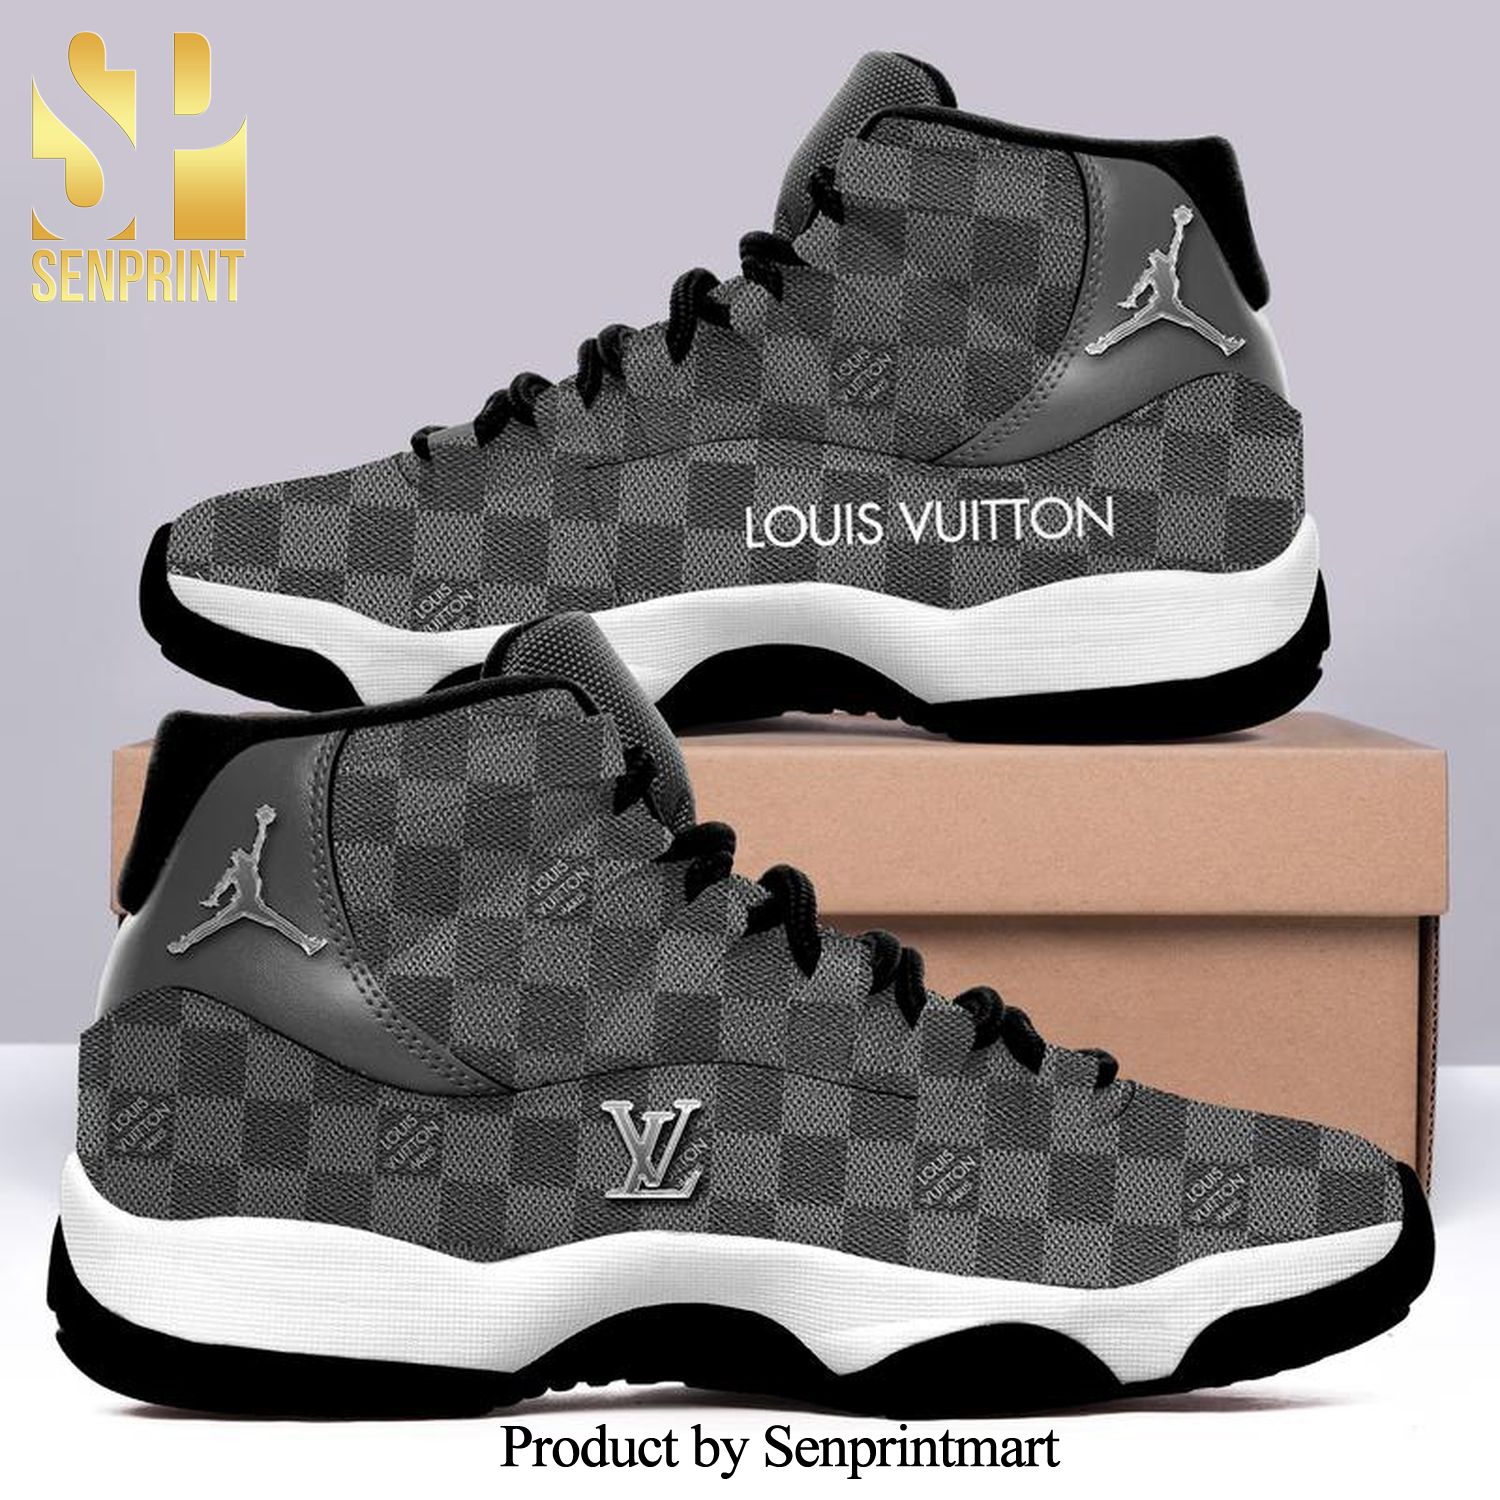 Louis vuitton monogram light grey Best Outfit 3D Air Jordan 11